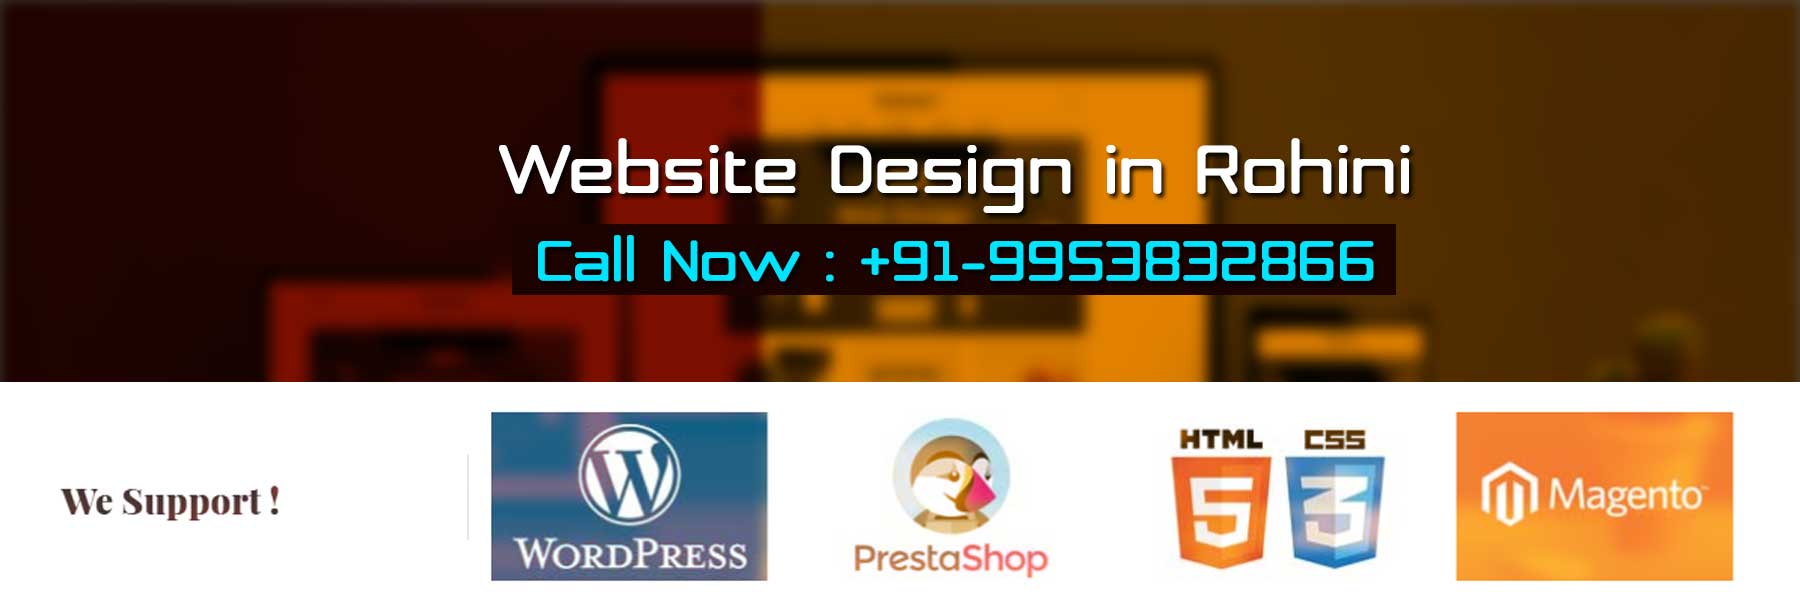 Website Design in Rohini